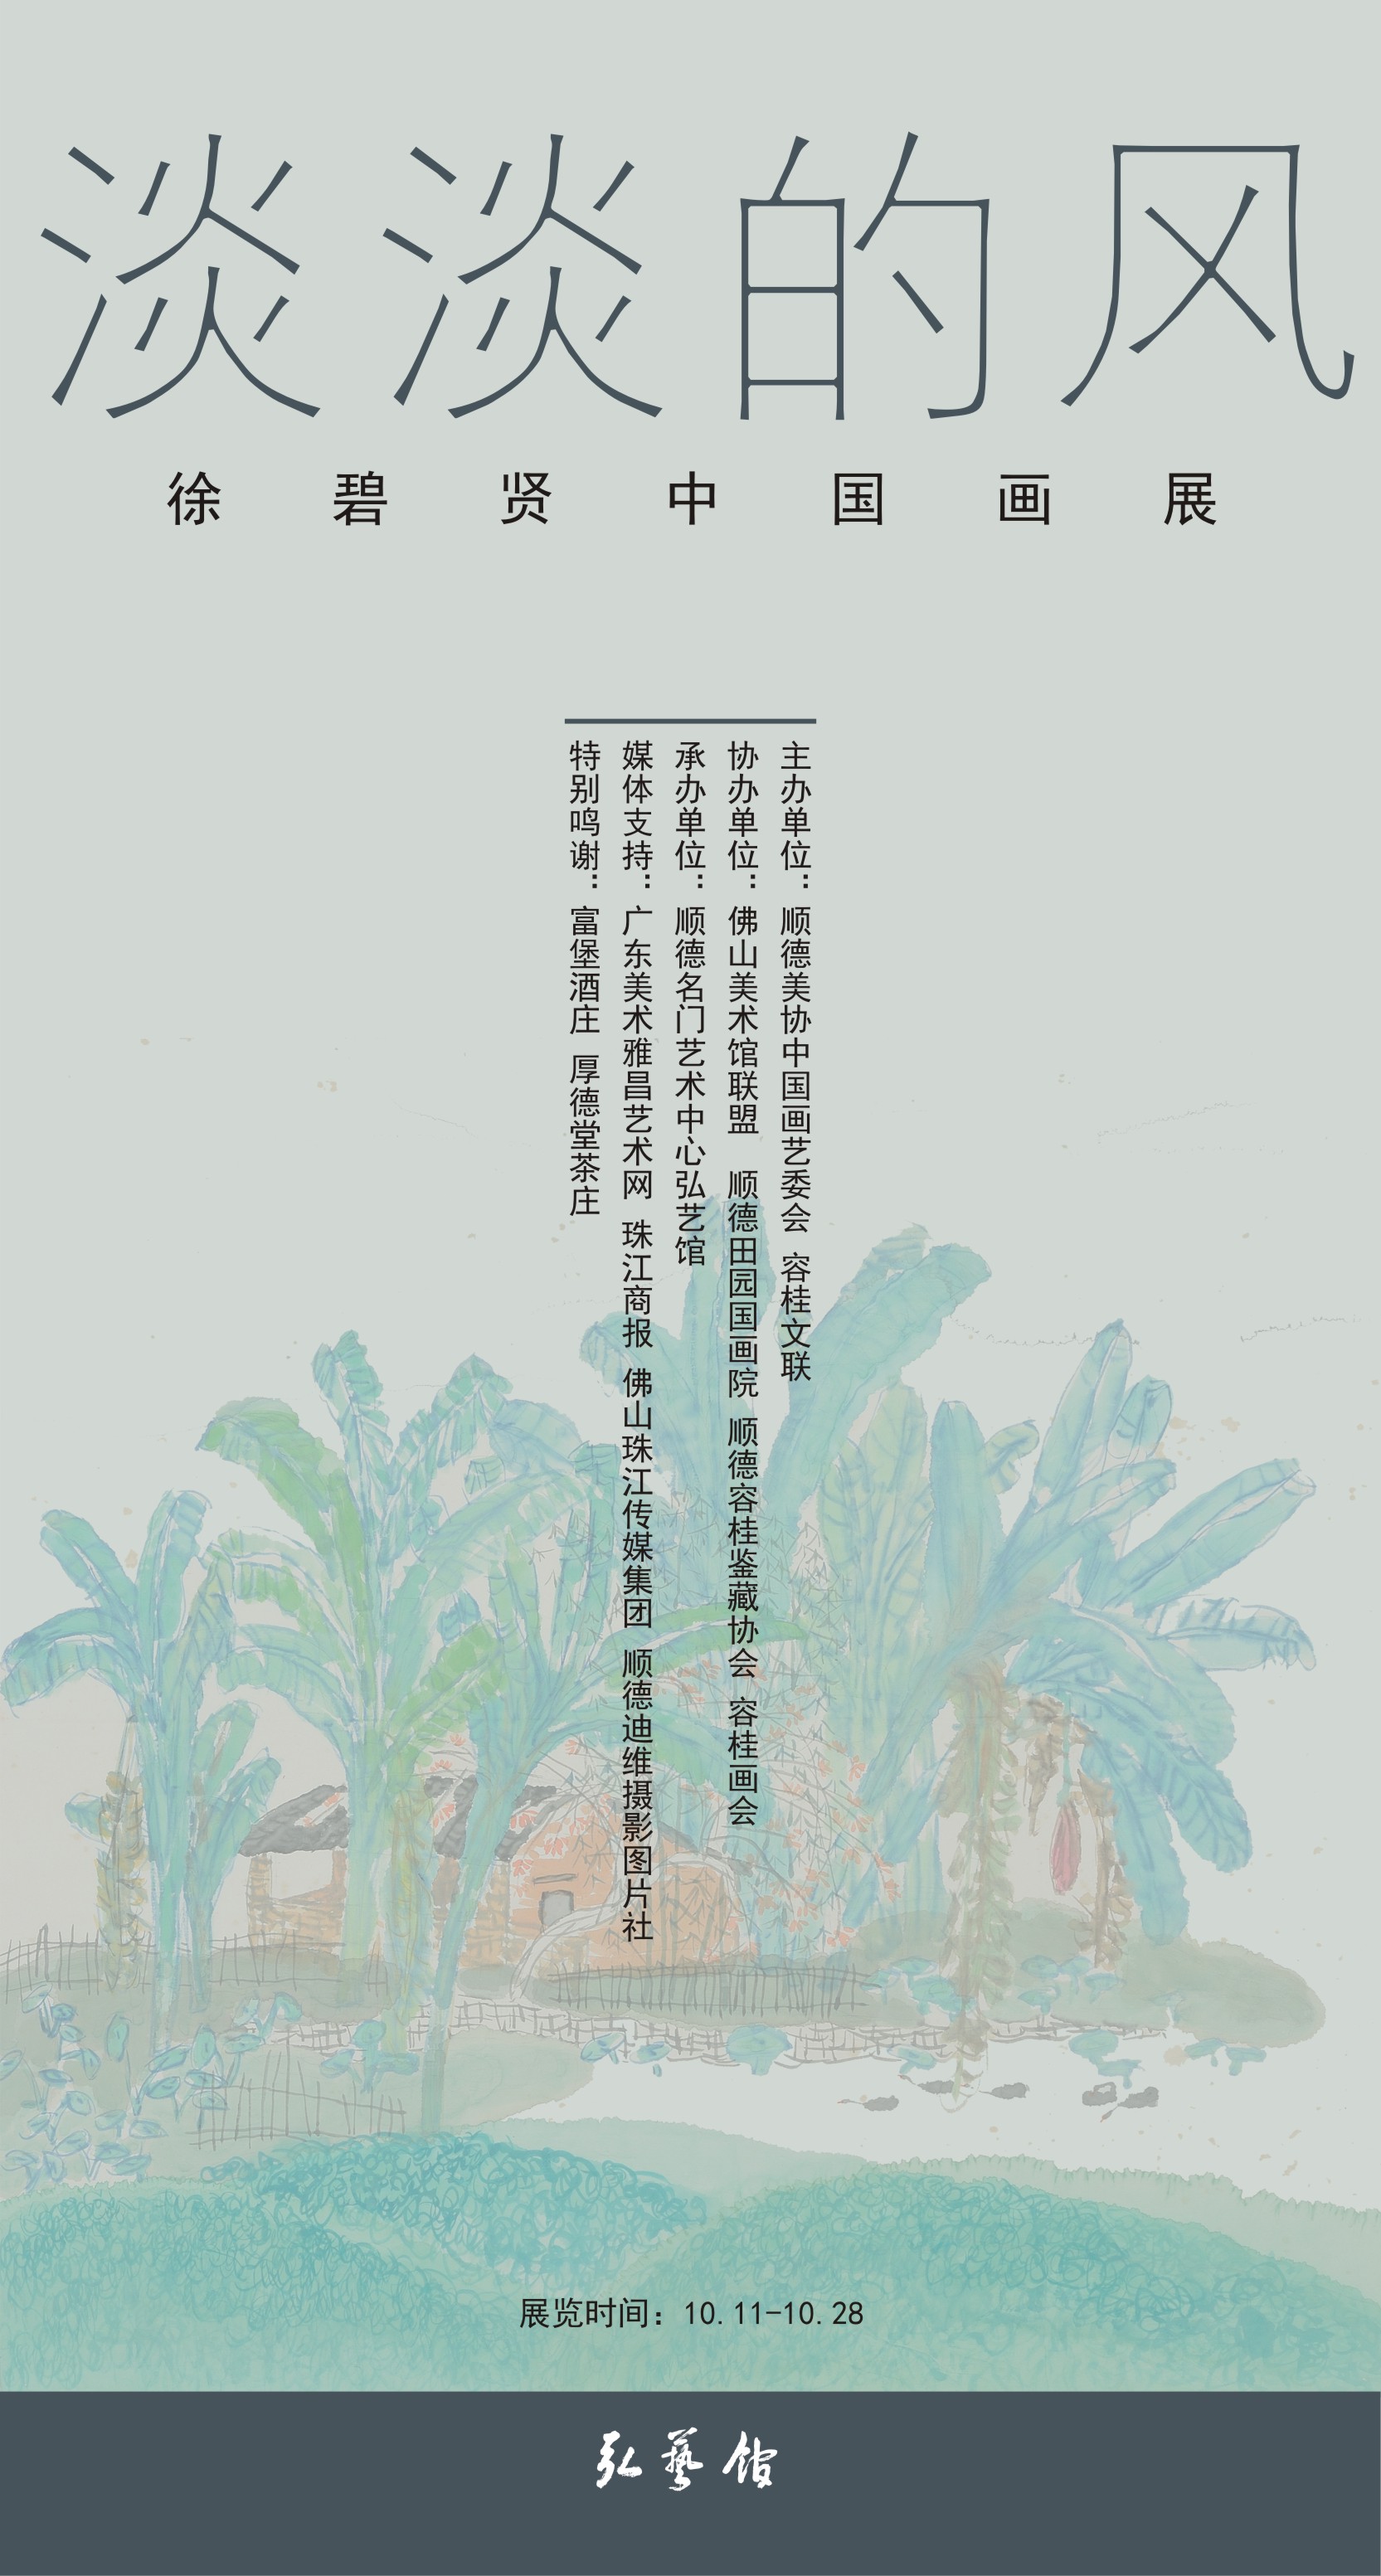  《淡淡的风》—— 徐碧贤中国画展